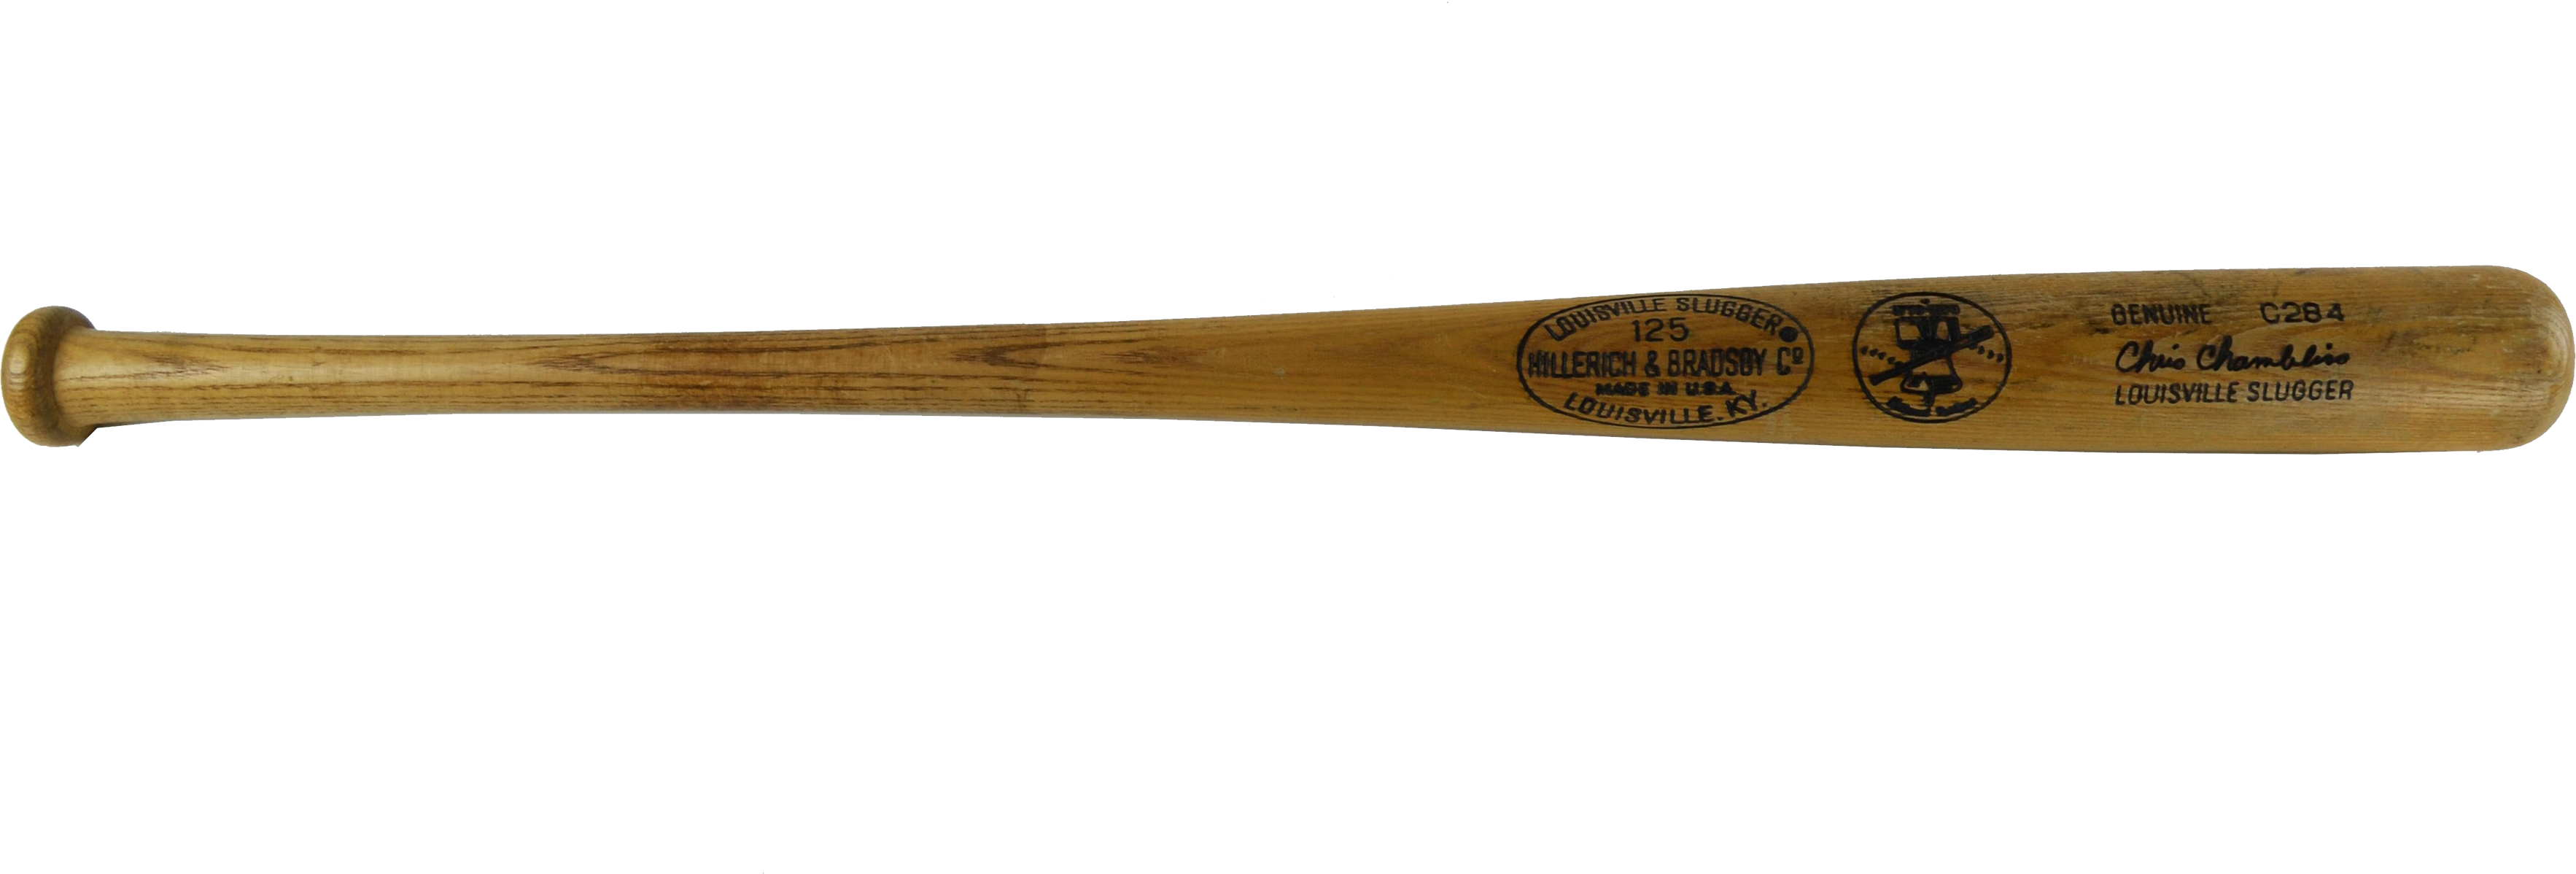 Baseball bat.